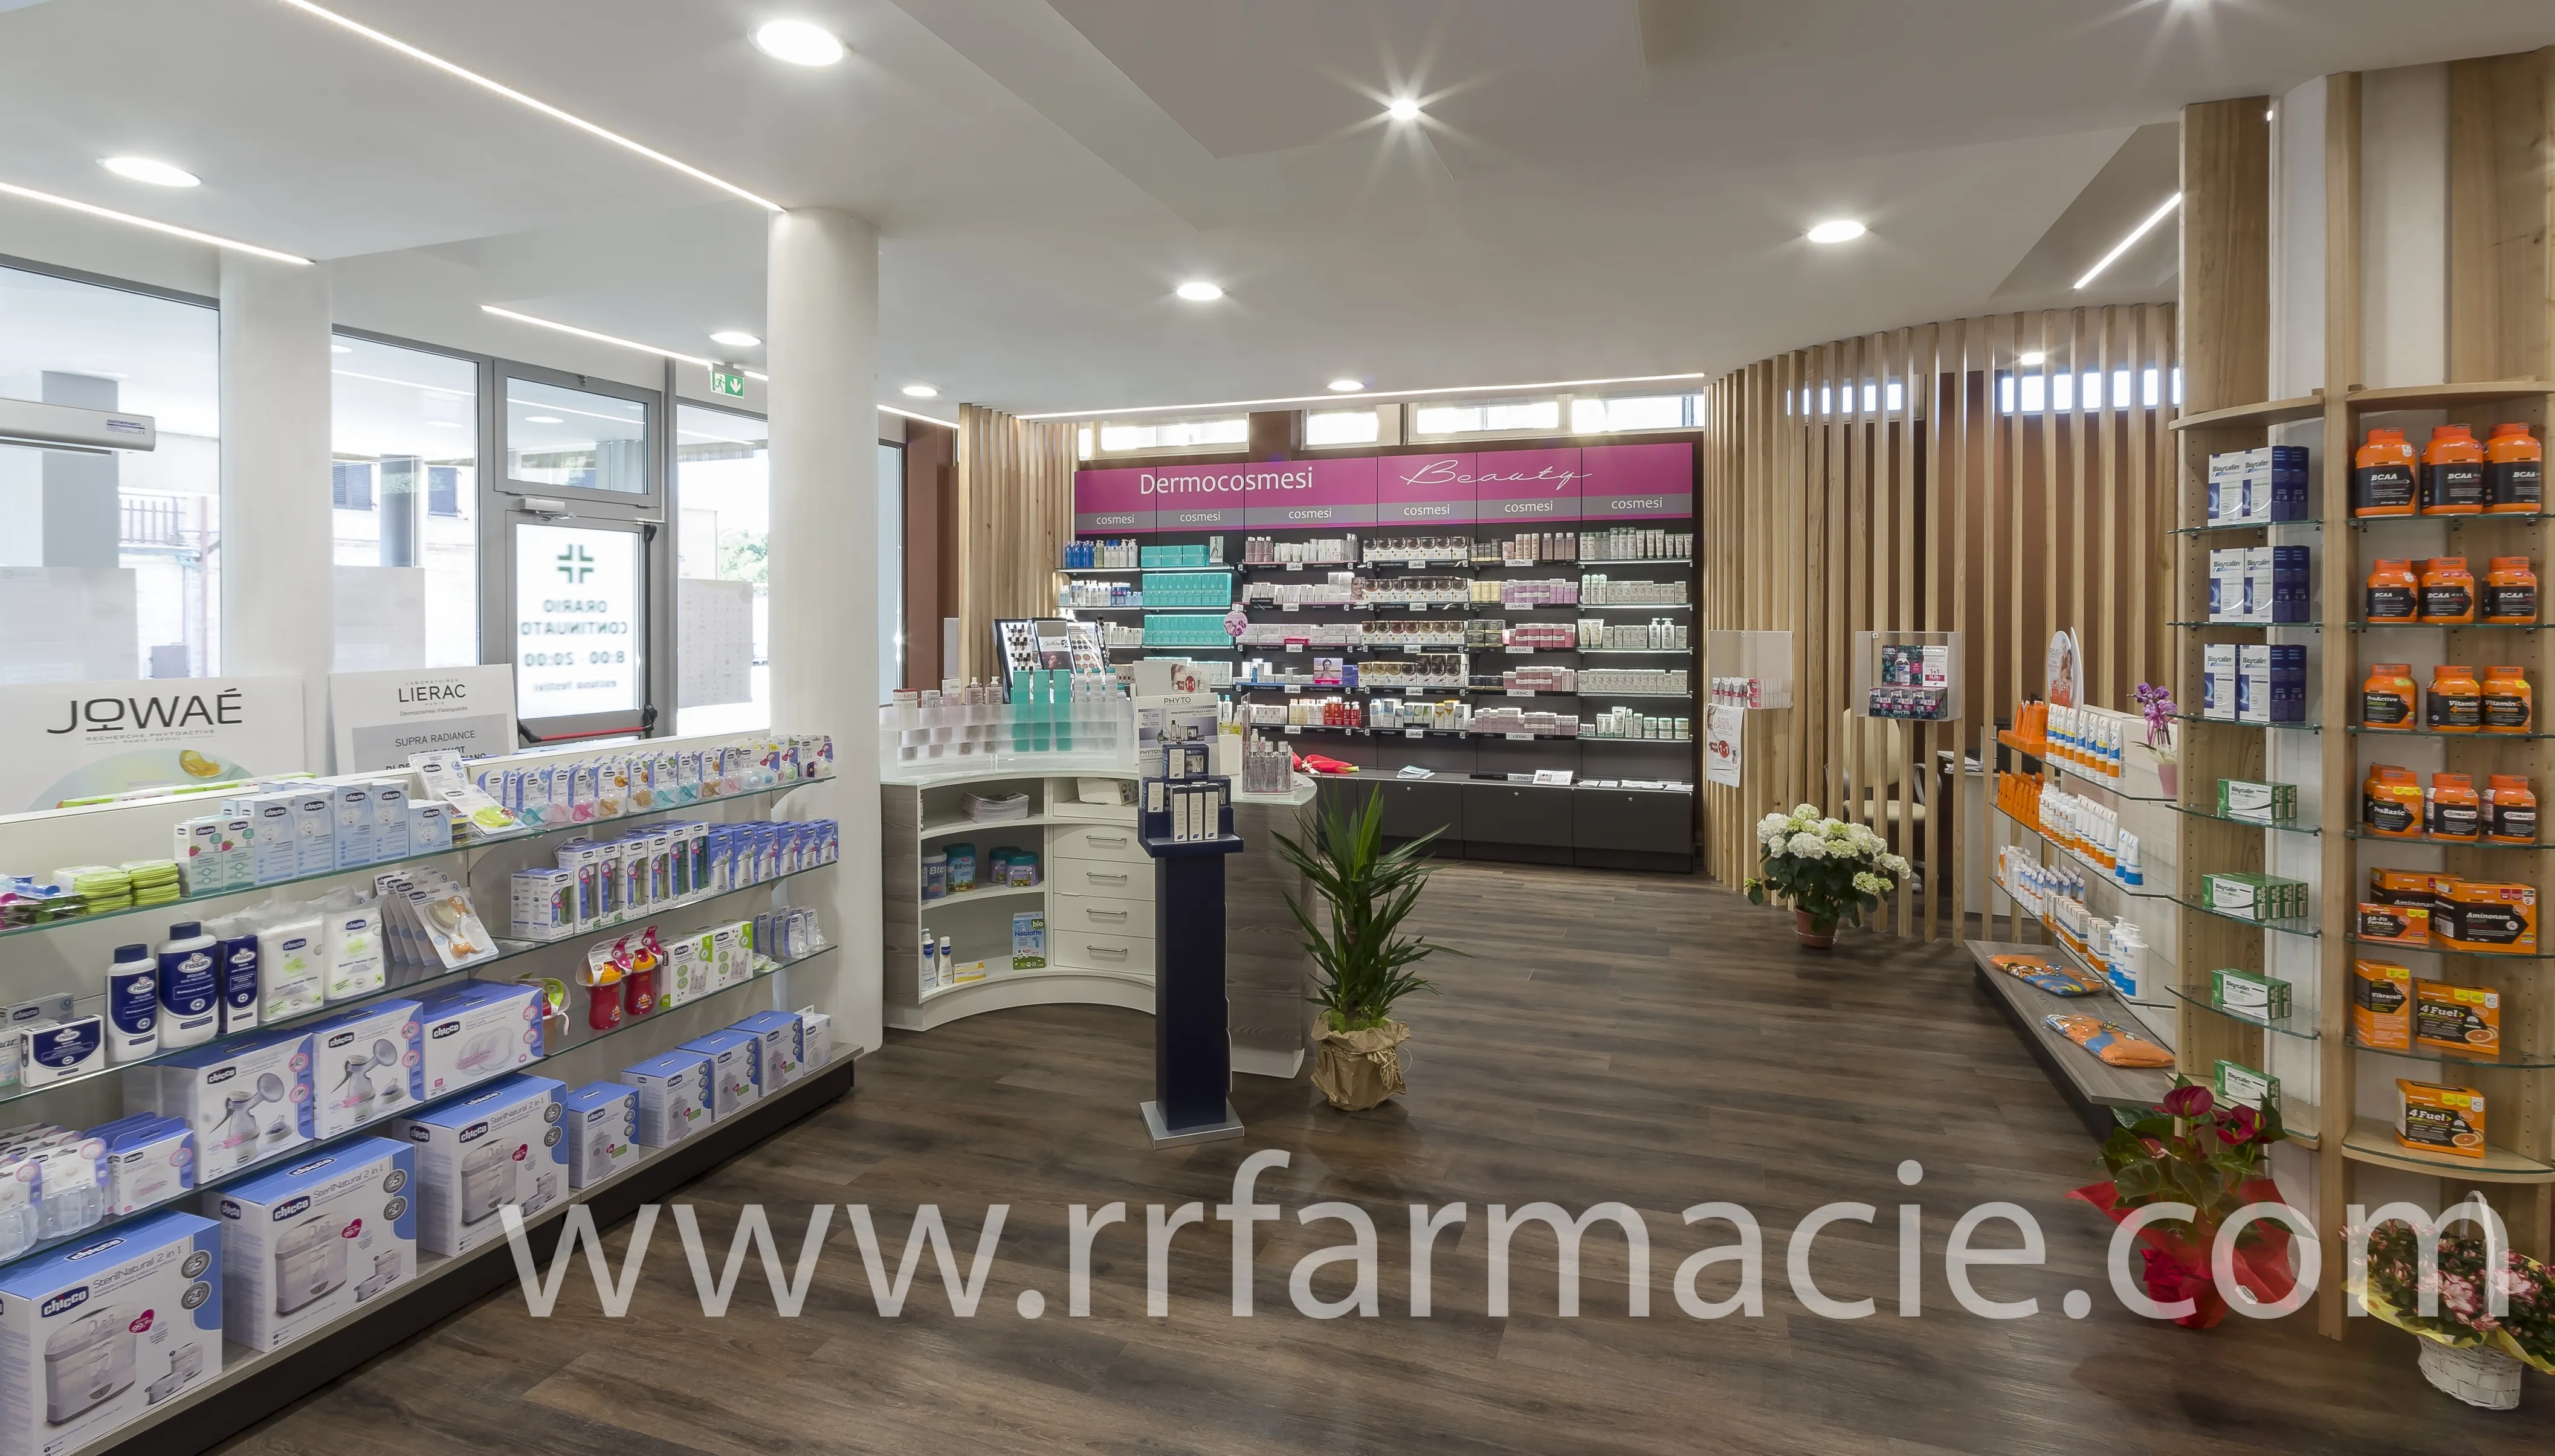 Pharmacy Cabinets Italy 